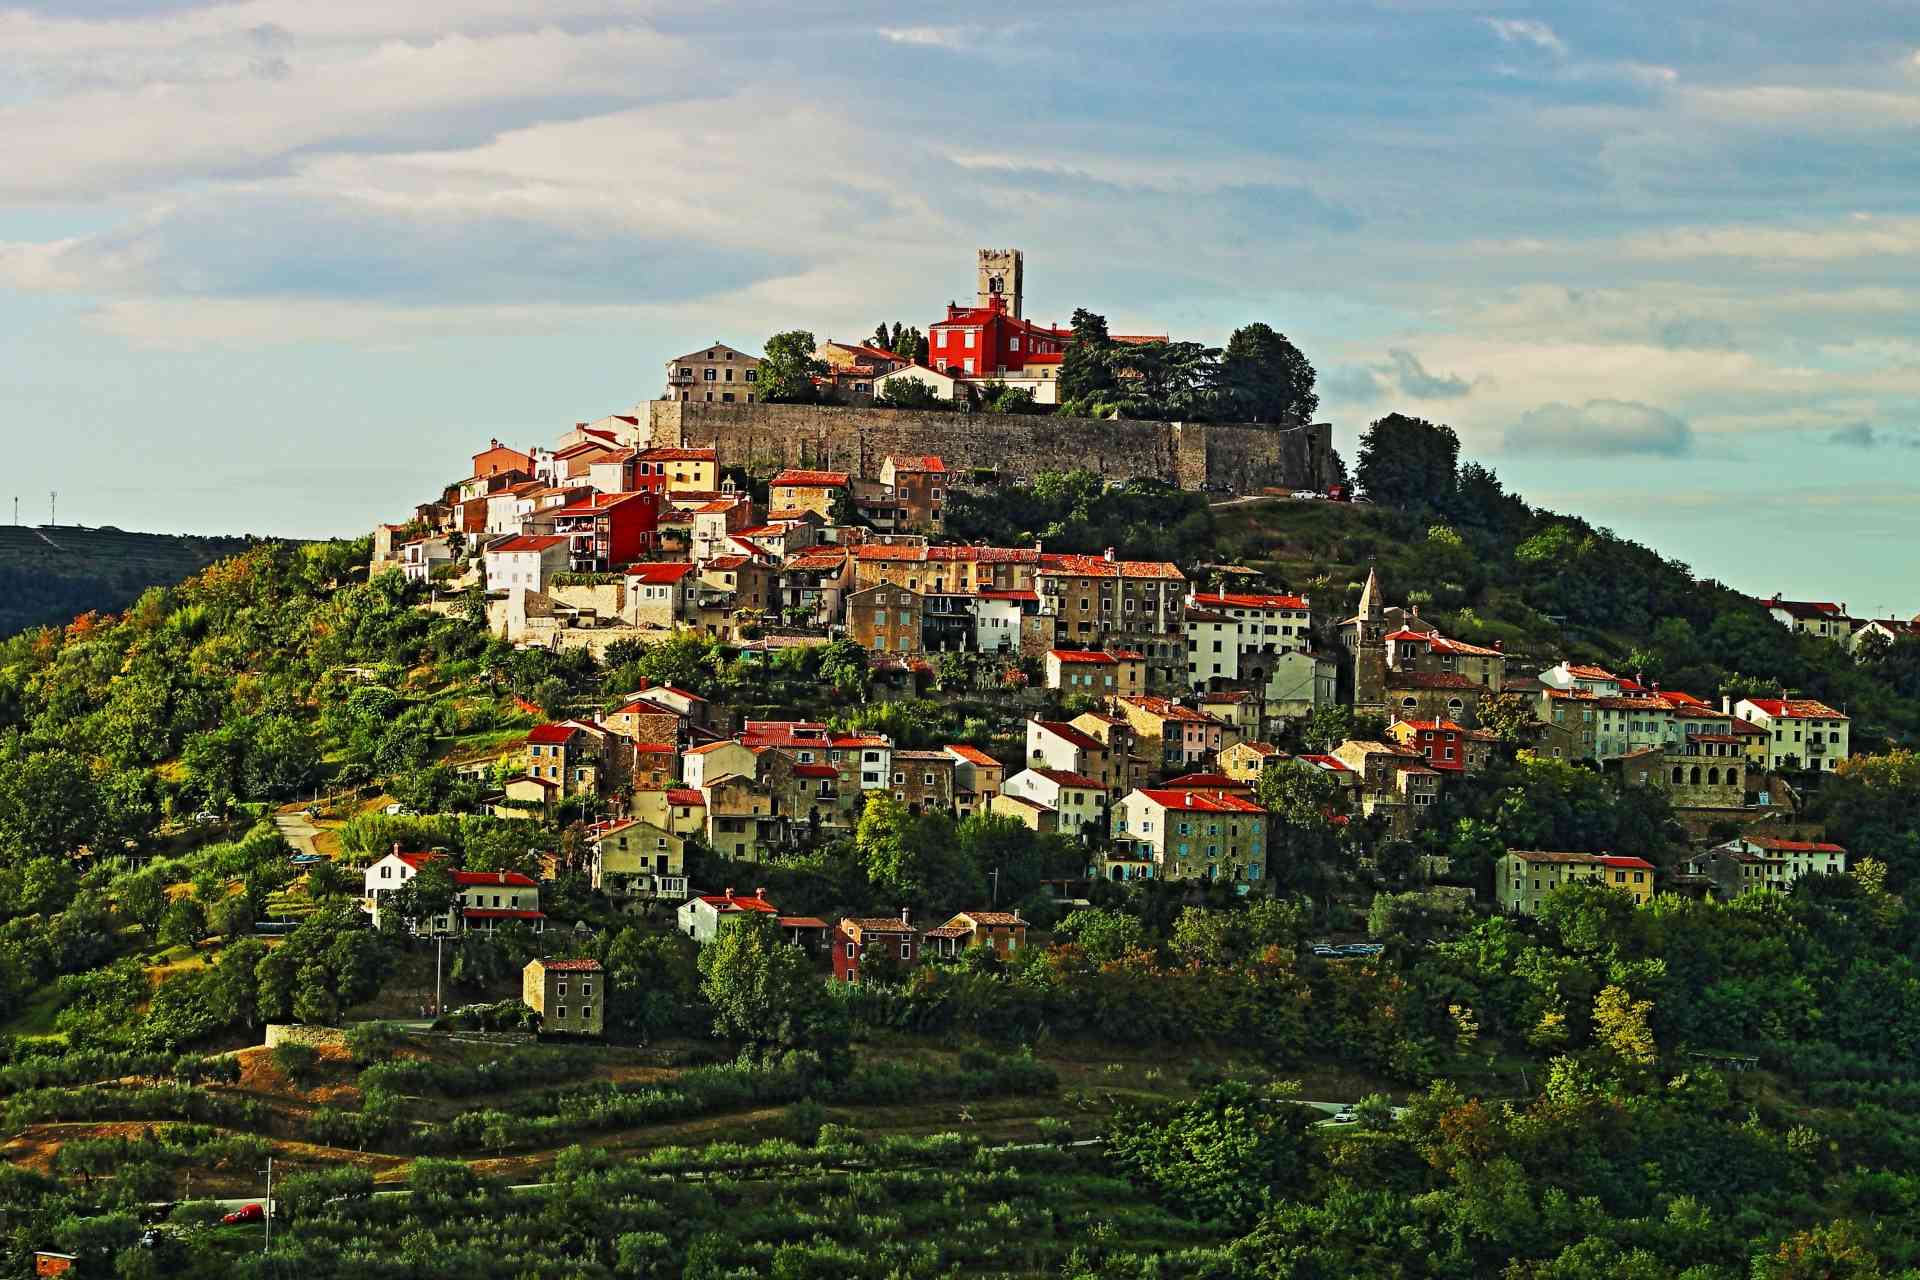 Motovun | Romantische Kleinstadt auf einem 280 m hohen Hügel über dem Tal von Mirna im grünen Hügelland Istriens.